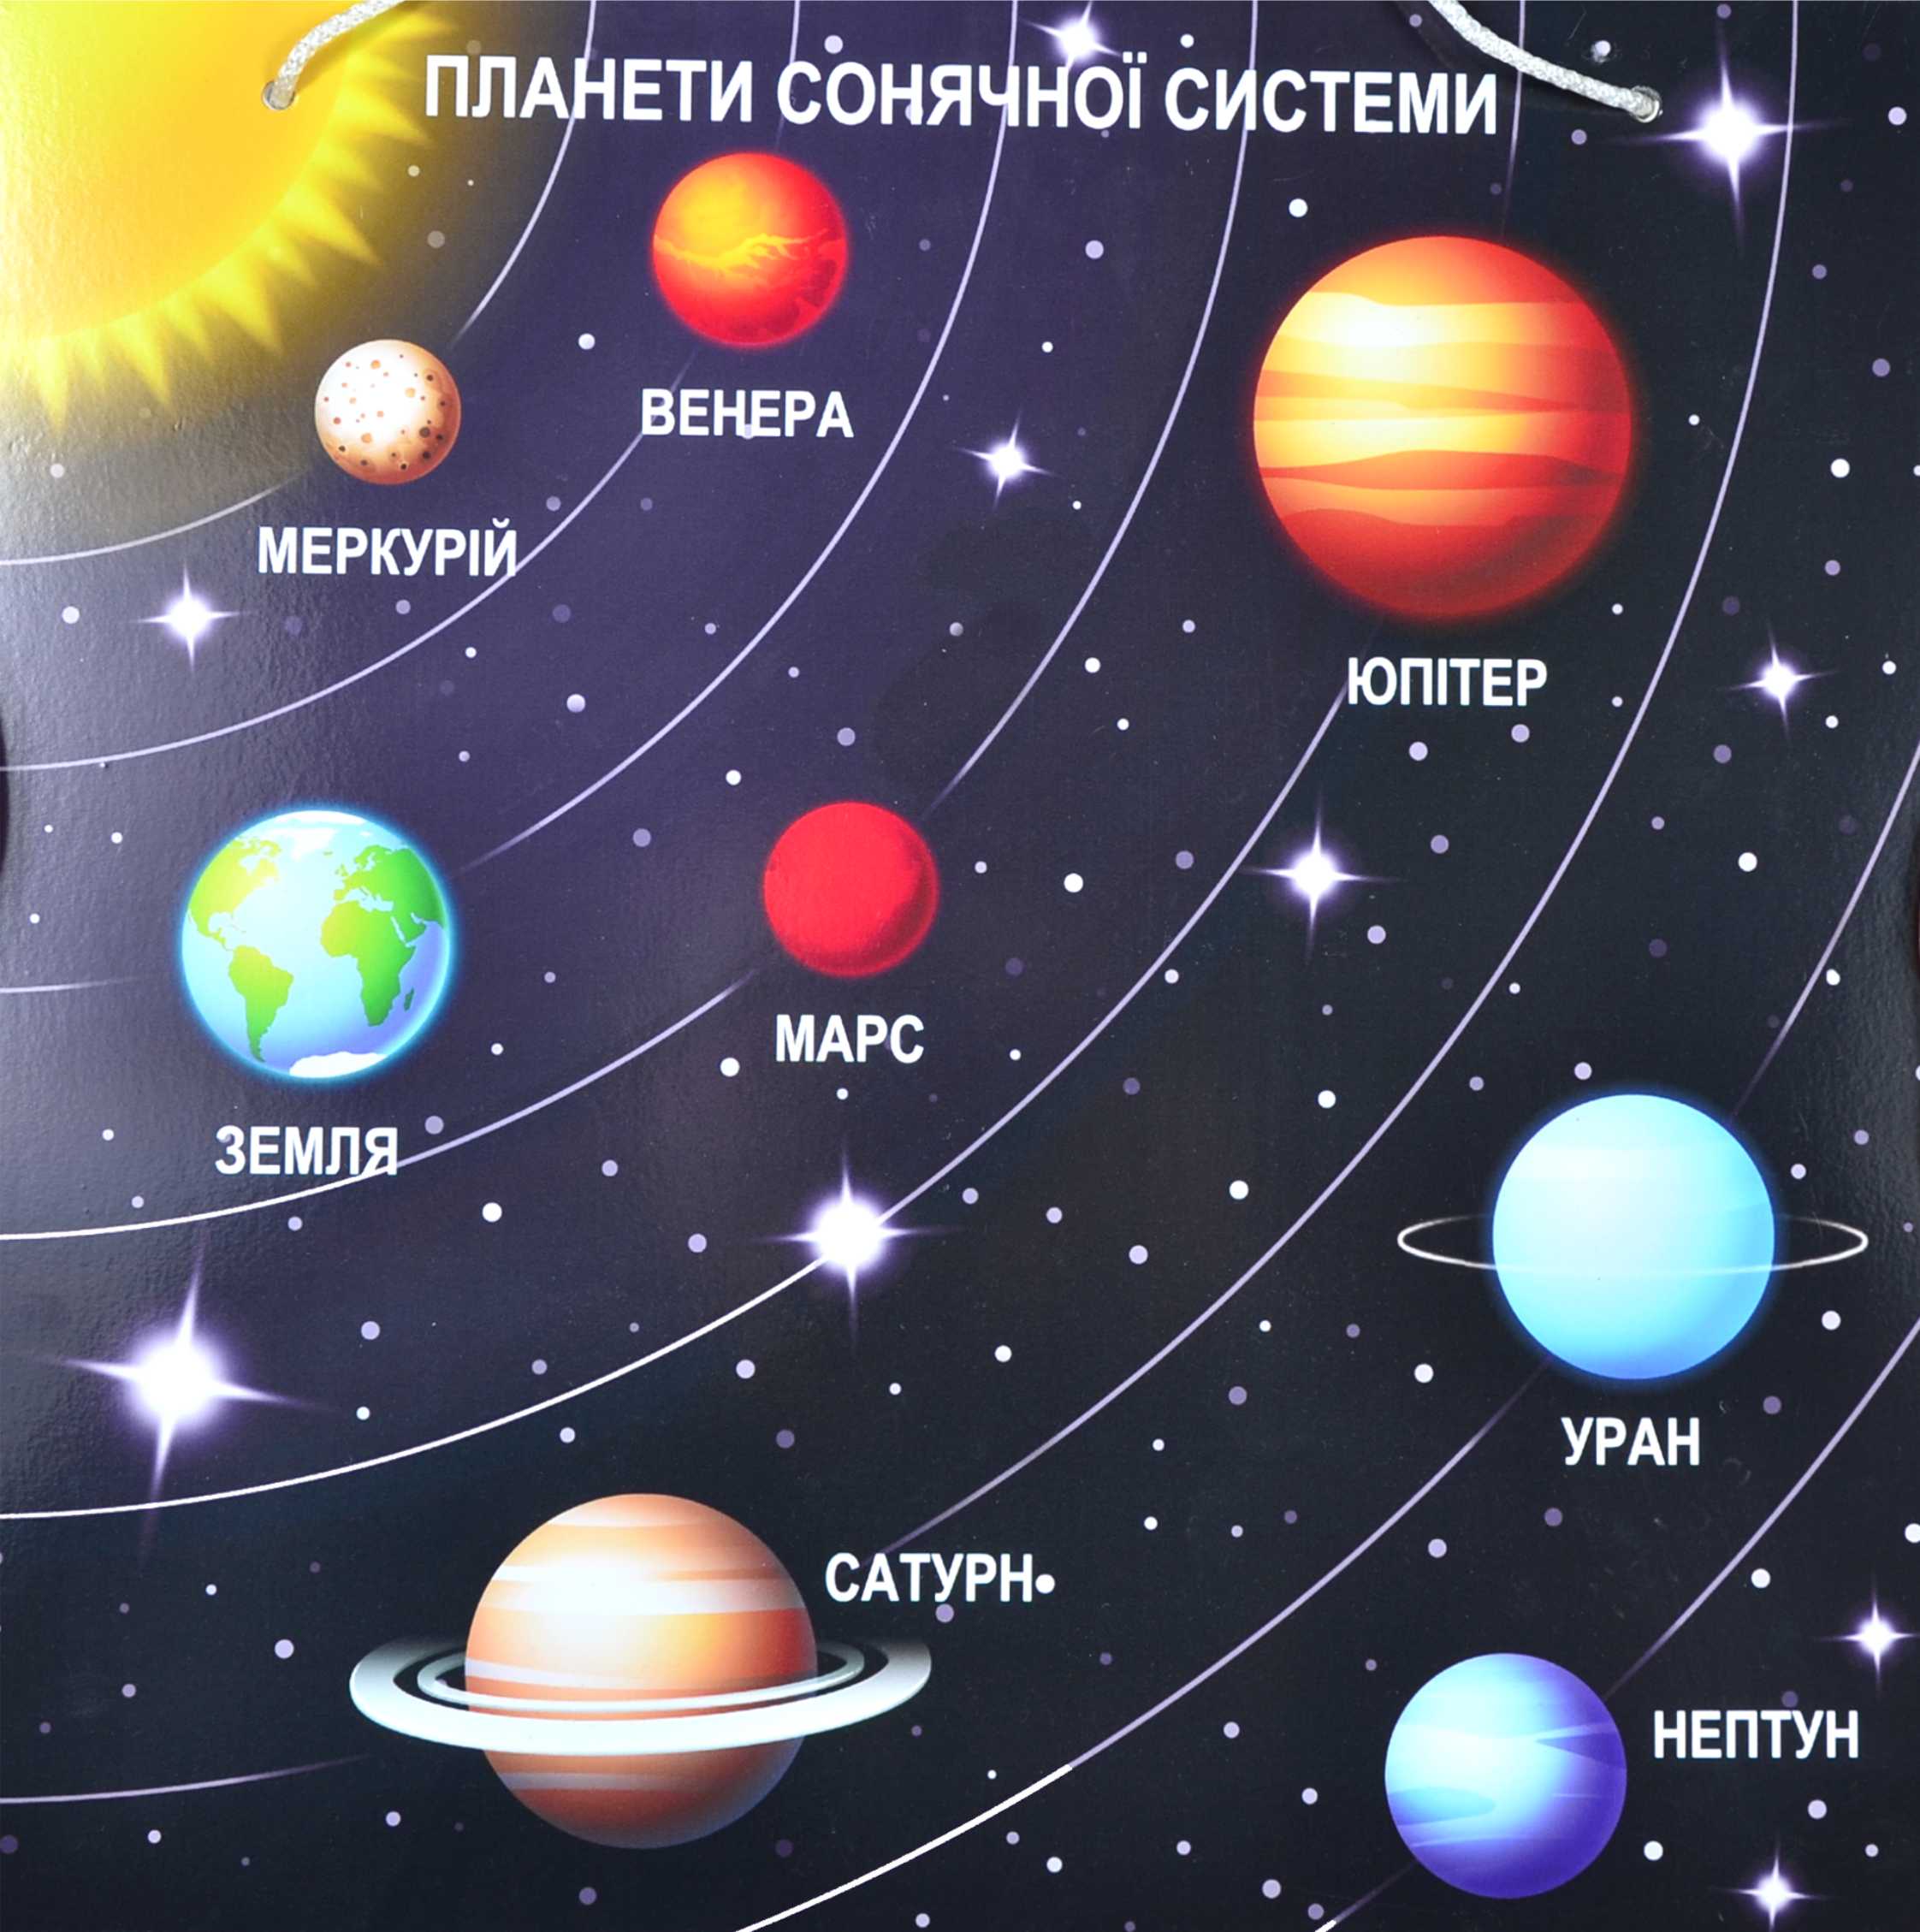 Сколько больших планет входит в солнечную систему. Солнечная система расположение плане. Солнечная система с названиями планет по порядку от солнца. Планеты солнечной системы по порядку от солнца с названиями для детей. Расположение планет солнечной системы.